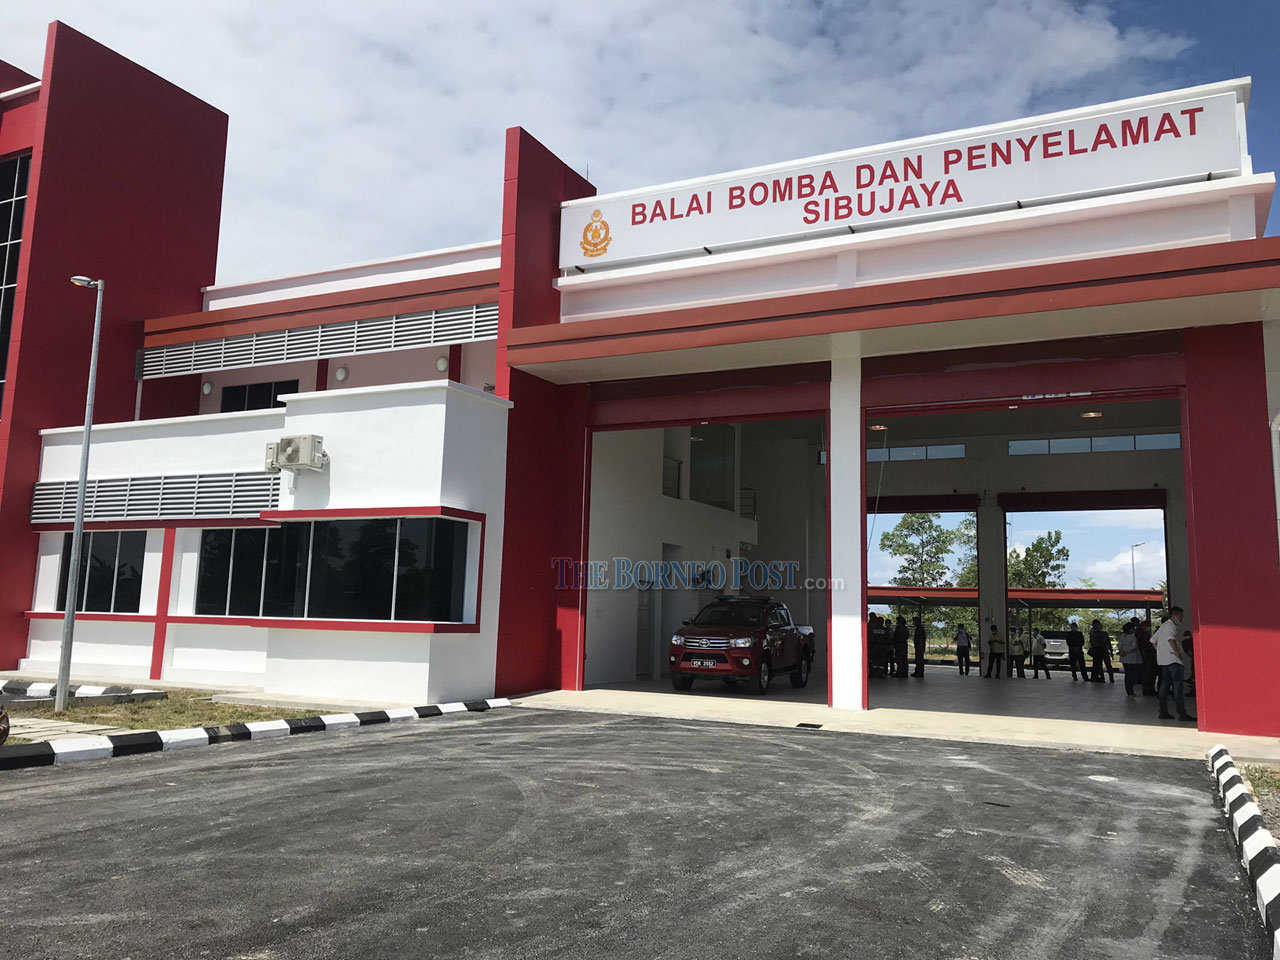 New Sibujaya Fire Station To Operate Oct 1